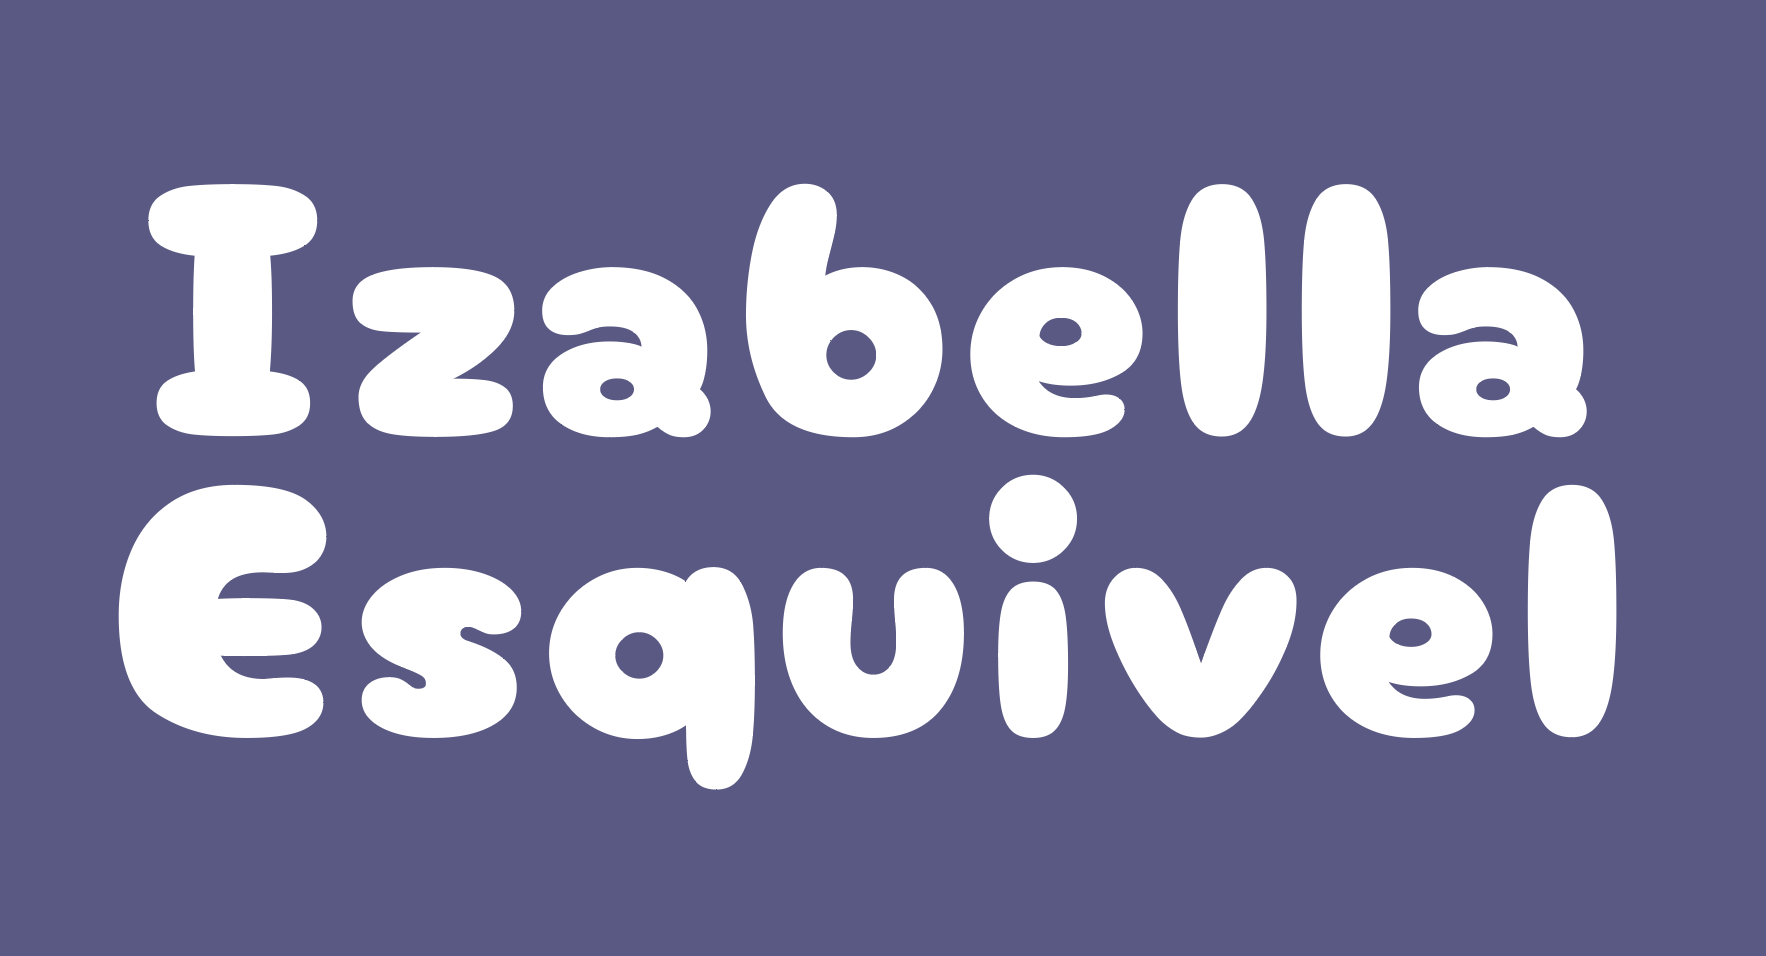 Izabella Esquivel